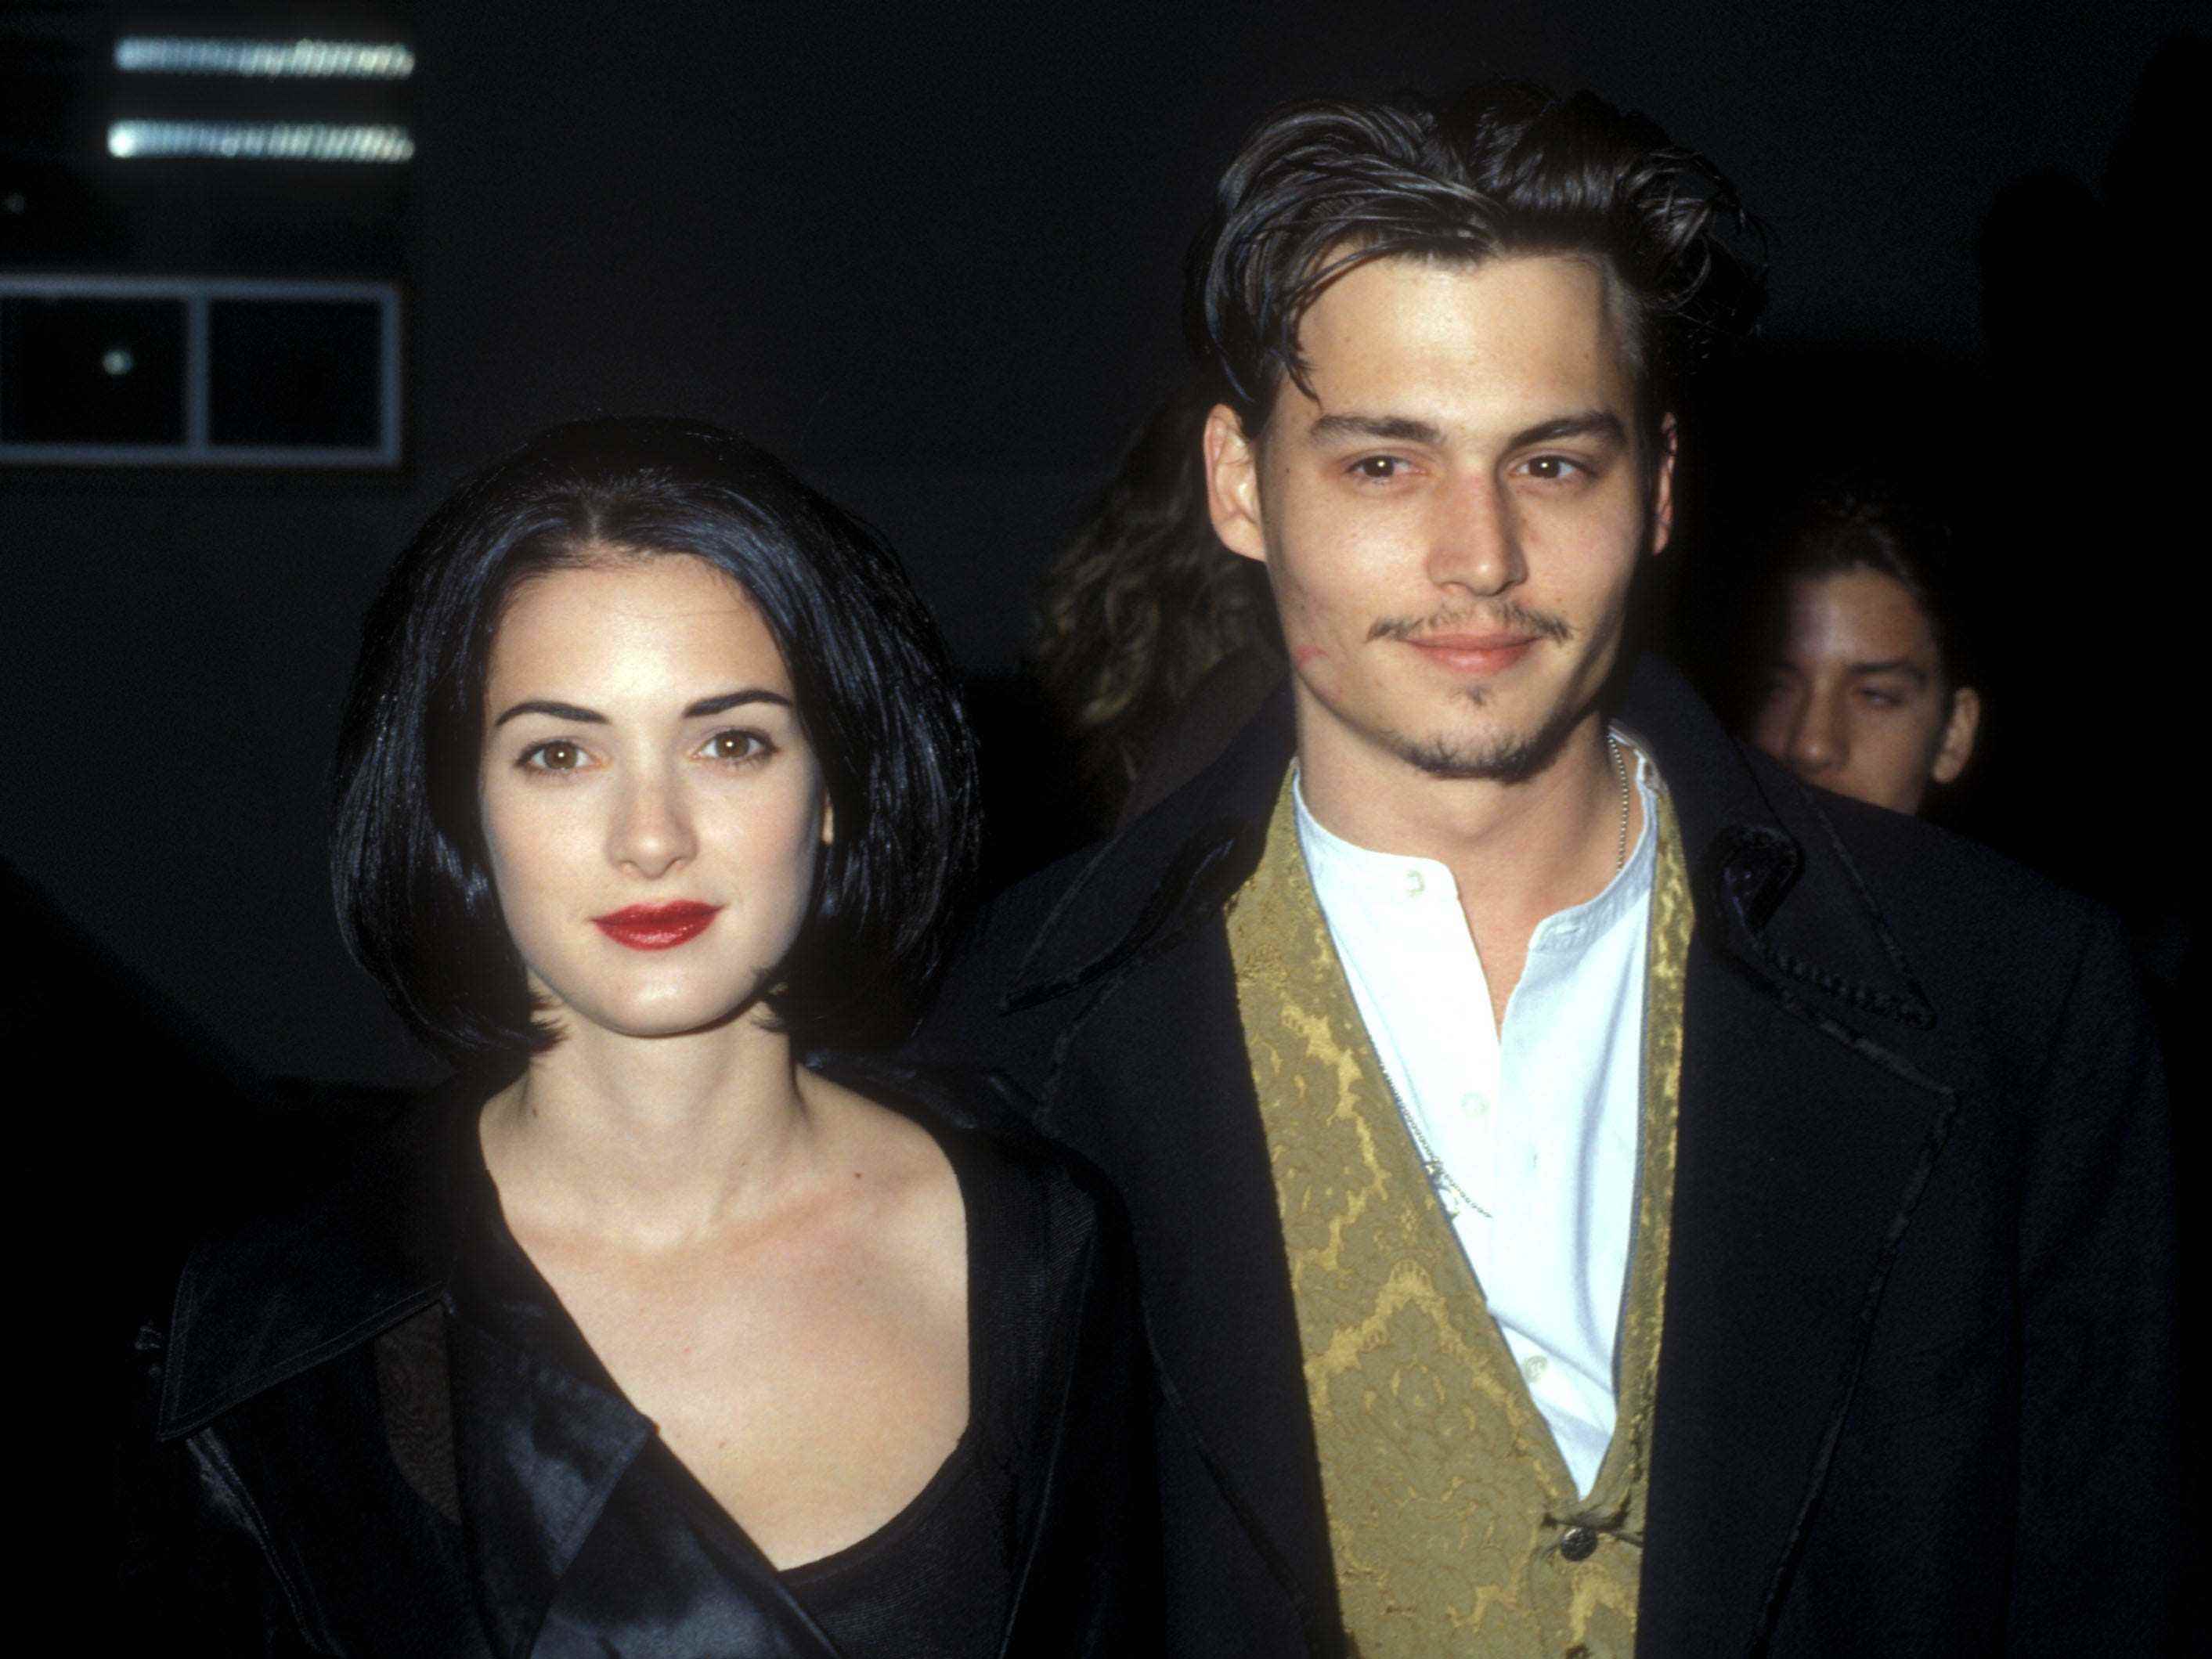 Winona Ryder und Johnny Depp in Los Angeles, Kalifornien, um 1990